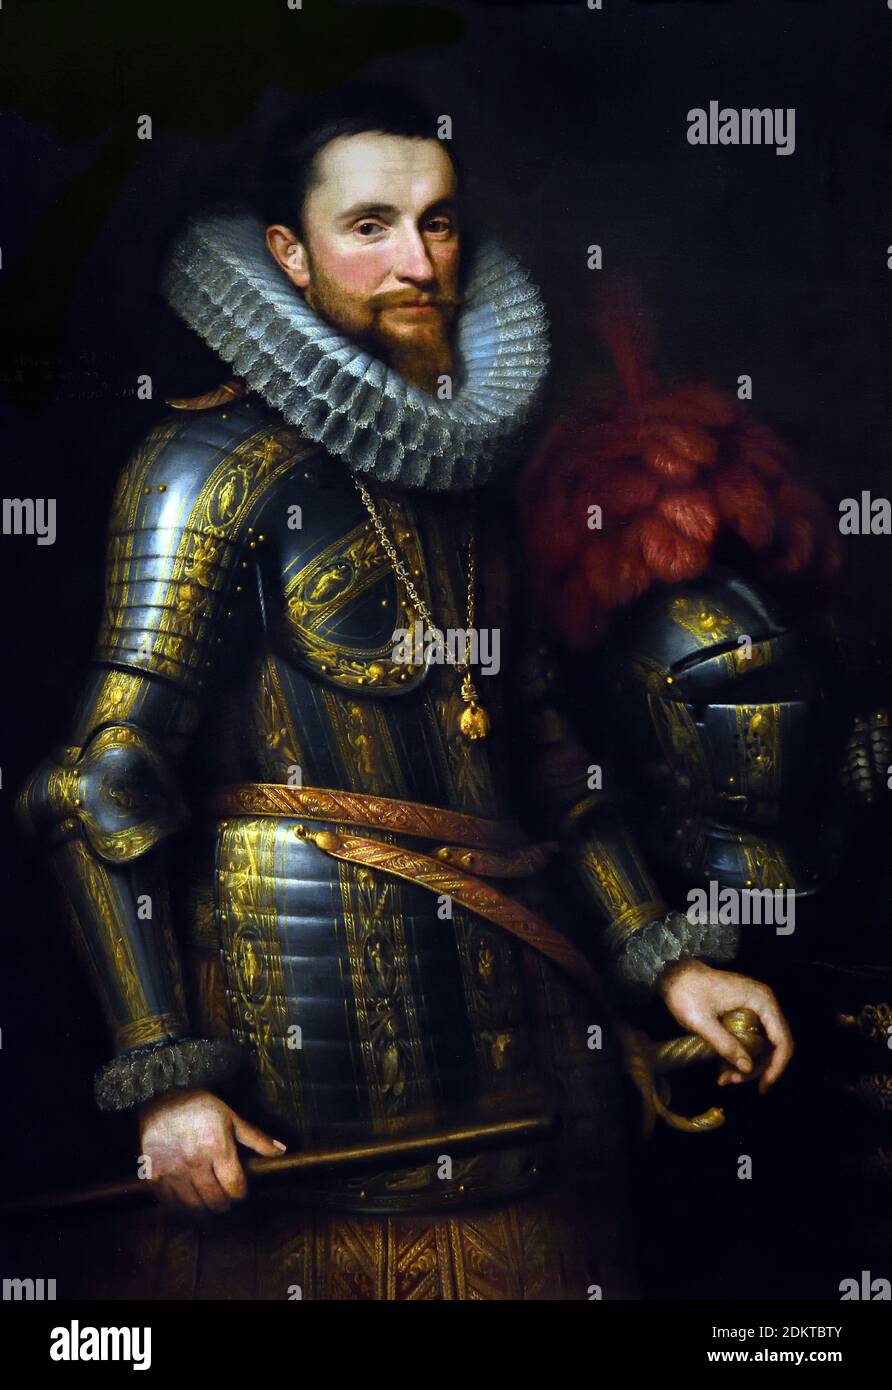 Ambrogio Spinola (1569-1630, comandante in capo delle truppe spagnole nel sud dei Paesi Bassi. Pezzo di anca, in piedi in armatura da un tavolo su cui si erge il casco con pennacchi. Comando personale nella mano destra, la mano sinistra sul hilt della sua epee. L'emblema dell'ordine del vello d'oro su una catena intorno al collo. Di Michiel Jansz. Van Mierevelt (1566–1641) Olanda, Paesi Bassi, Olandese, il Revolt olandese 1566–1648 Paesi Bassi contro il governo del re Asburgo Filippo II di Spagna la guerra degli ottanta anni. Foto Stock